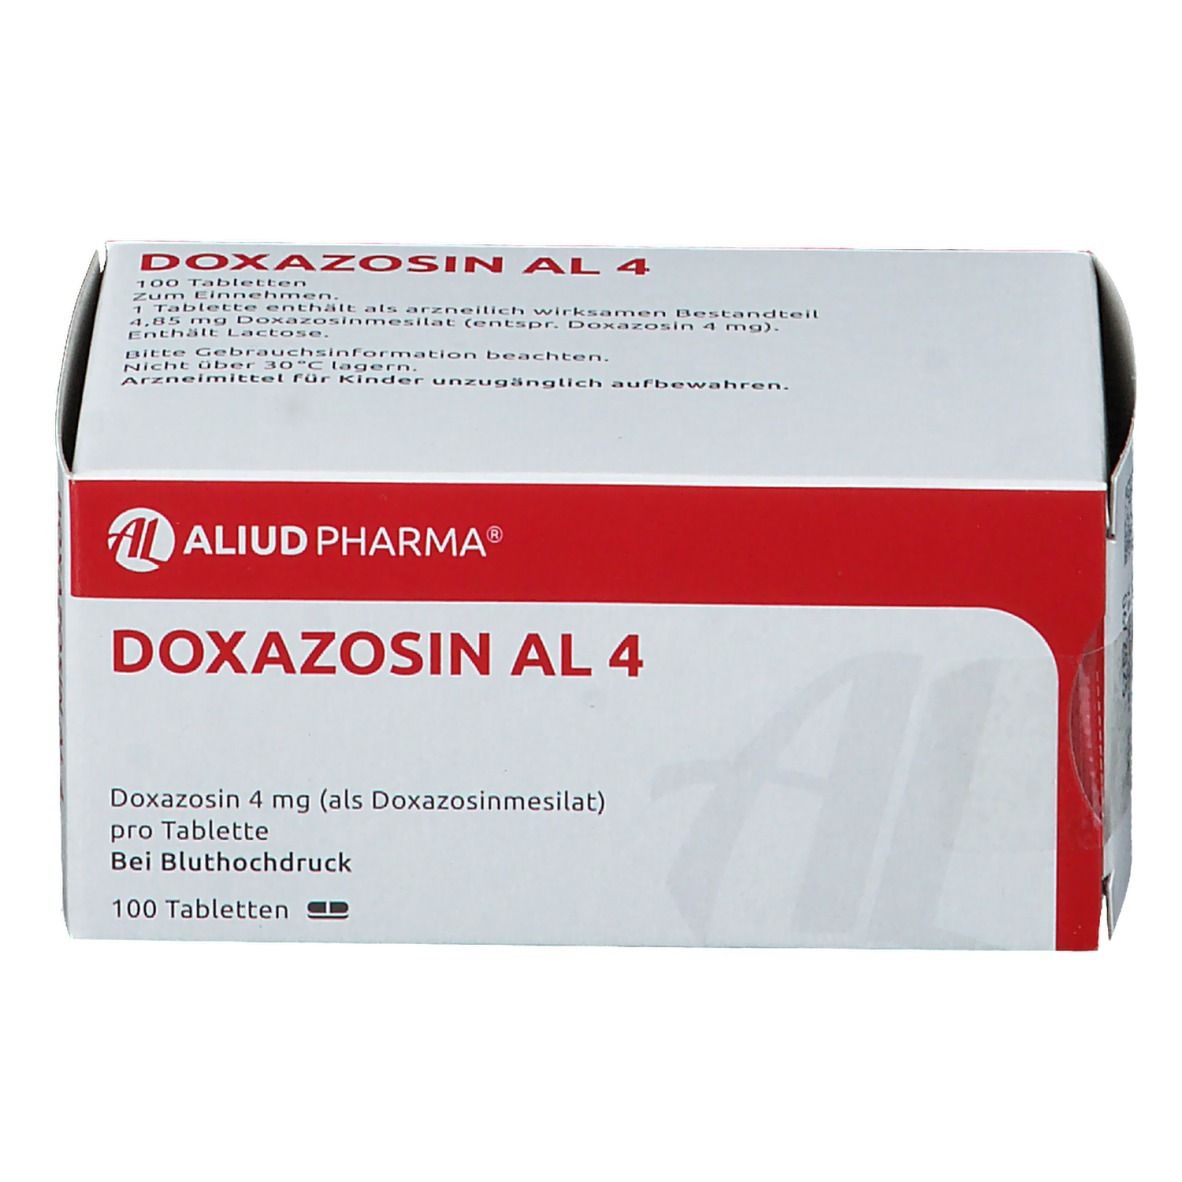 Doxazosin AL 4